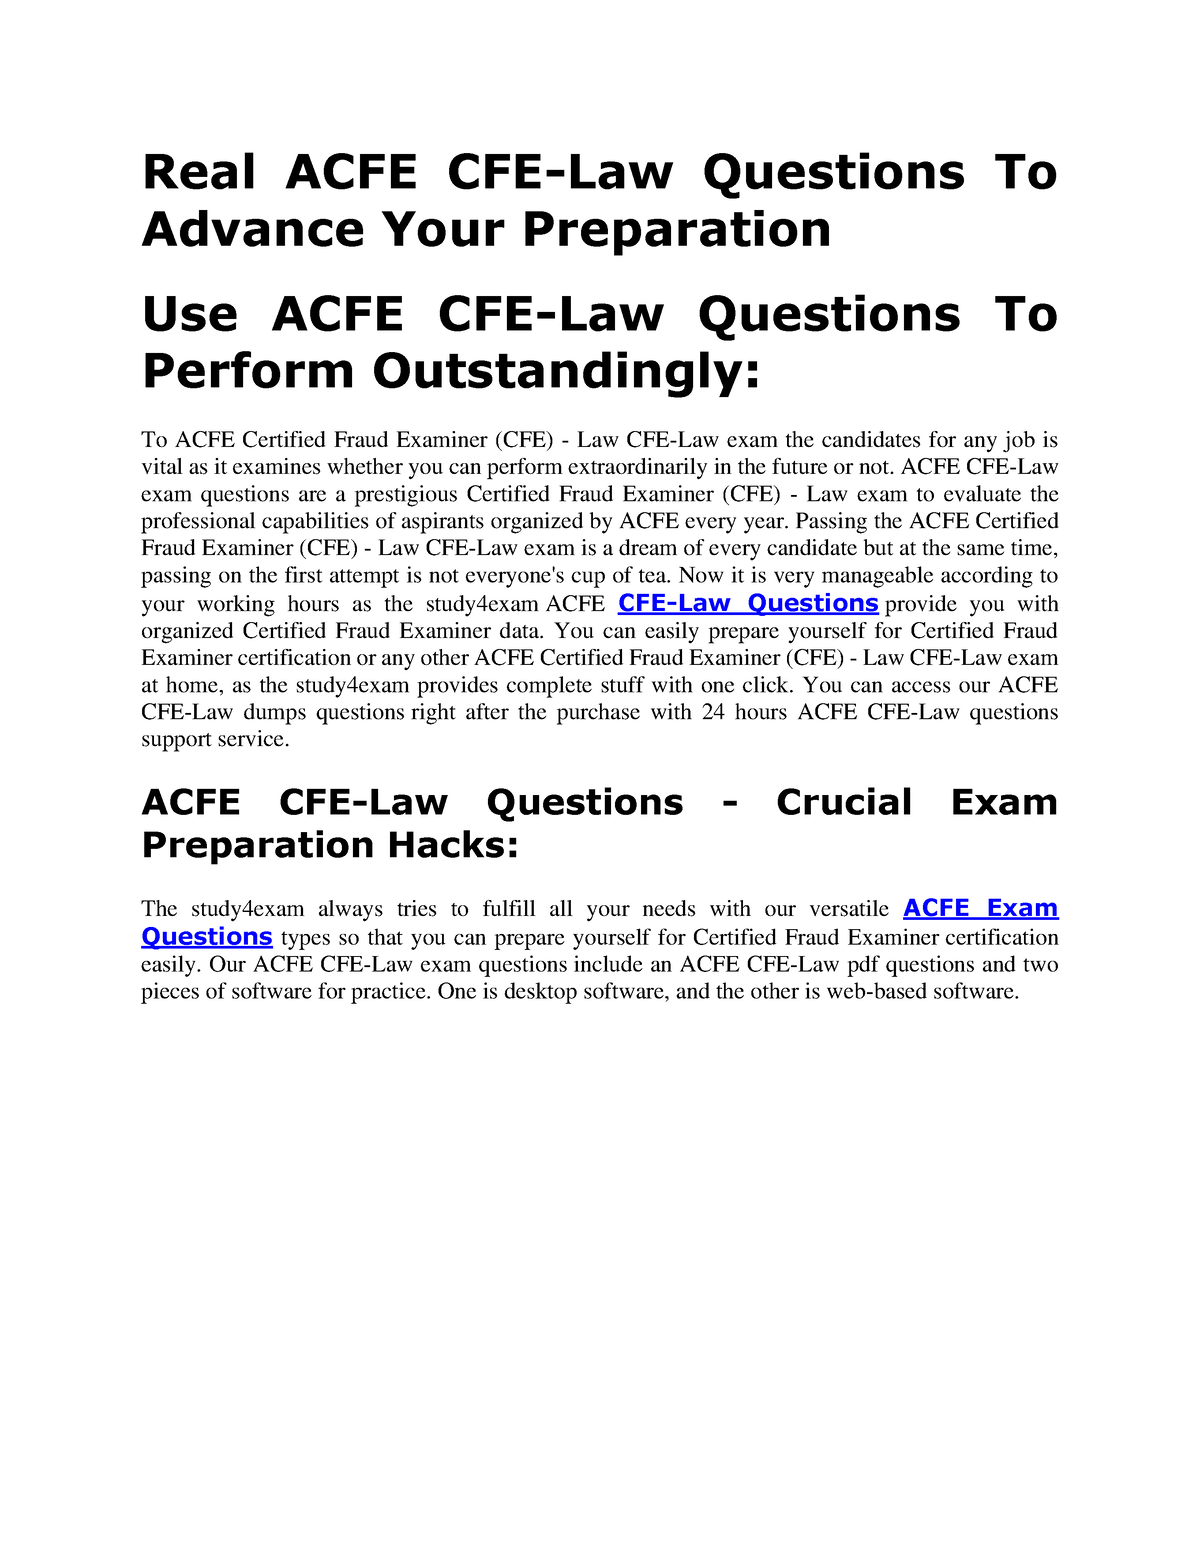 CFE-Law Testengine